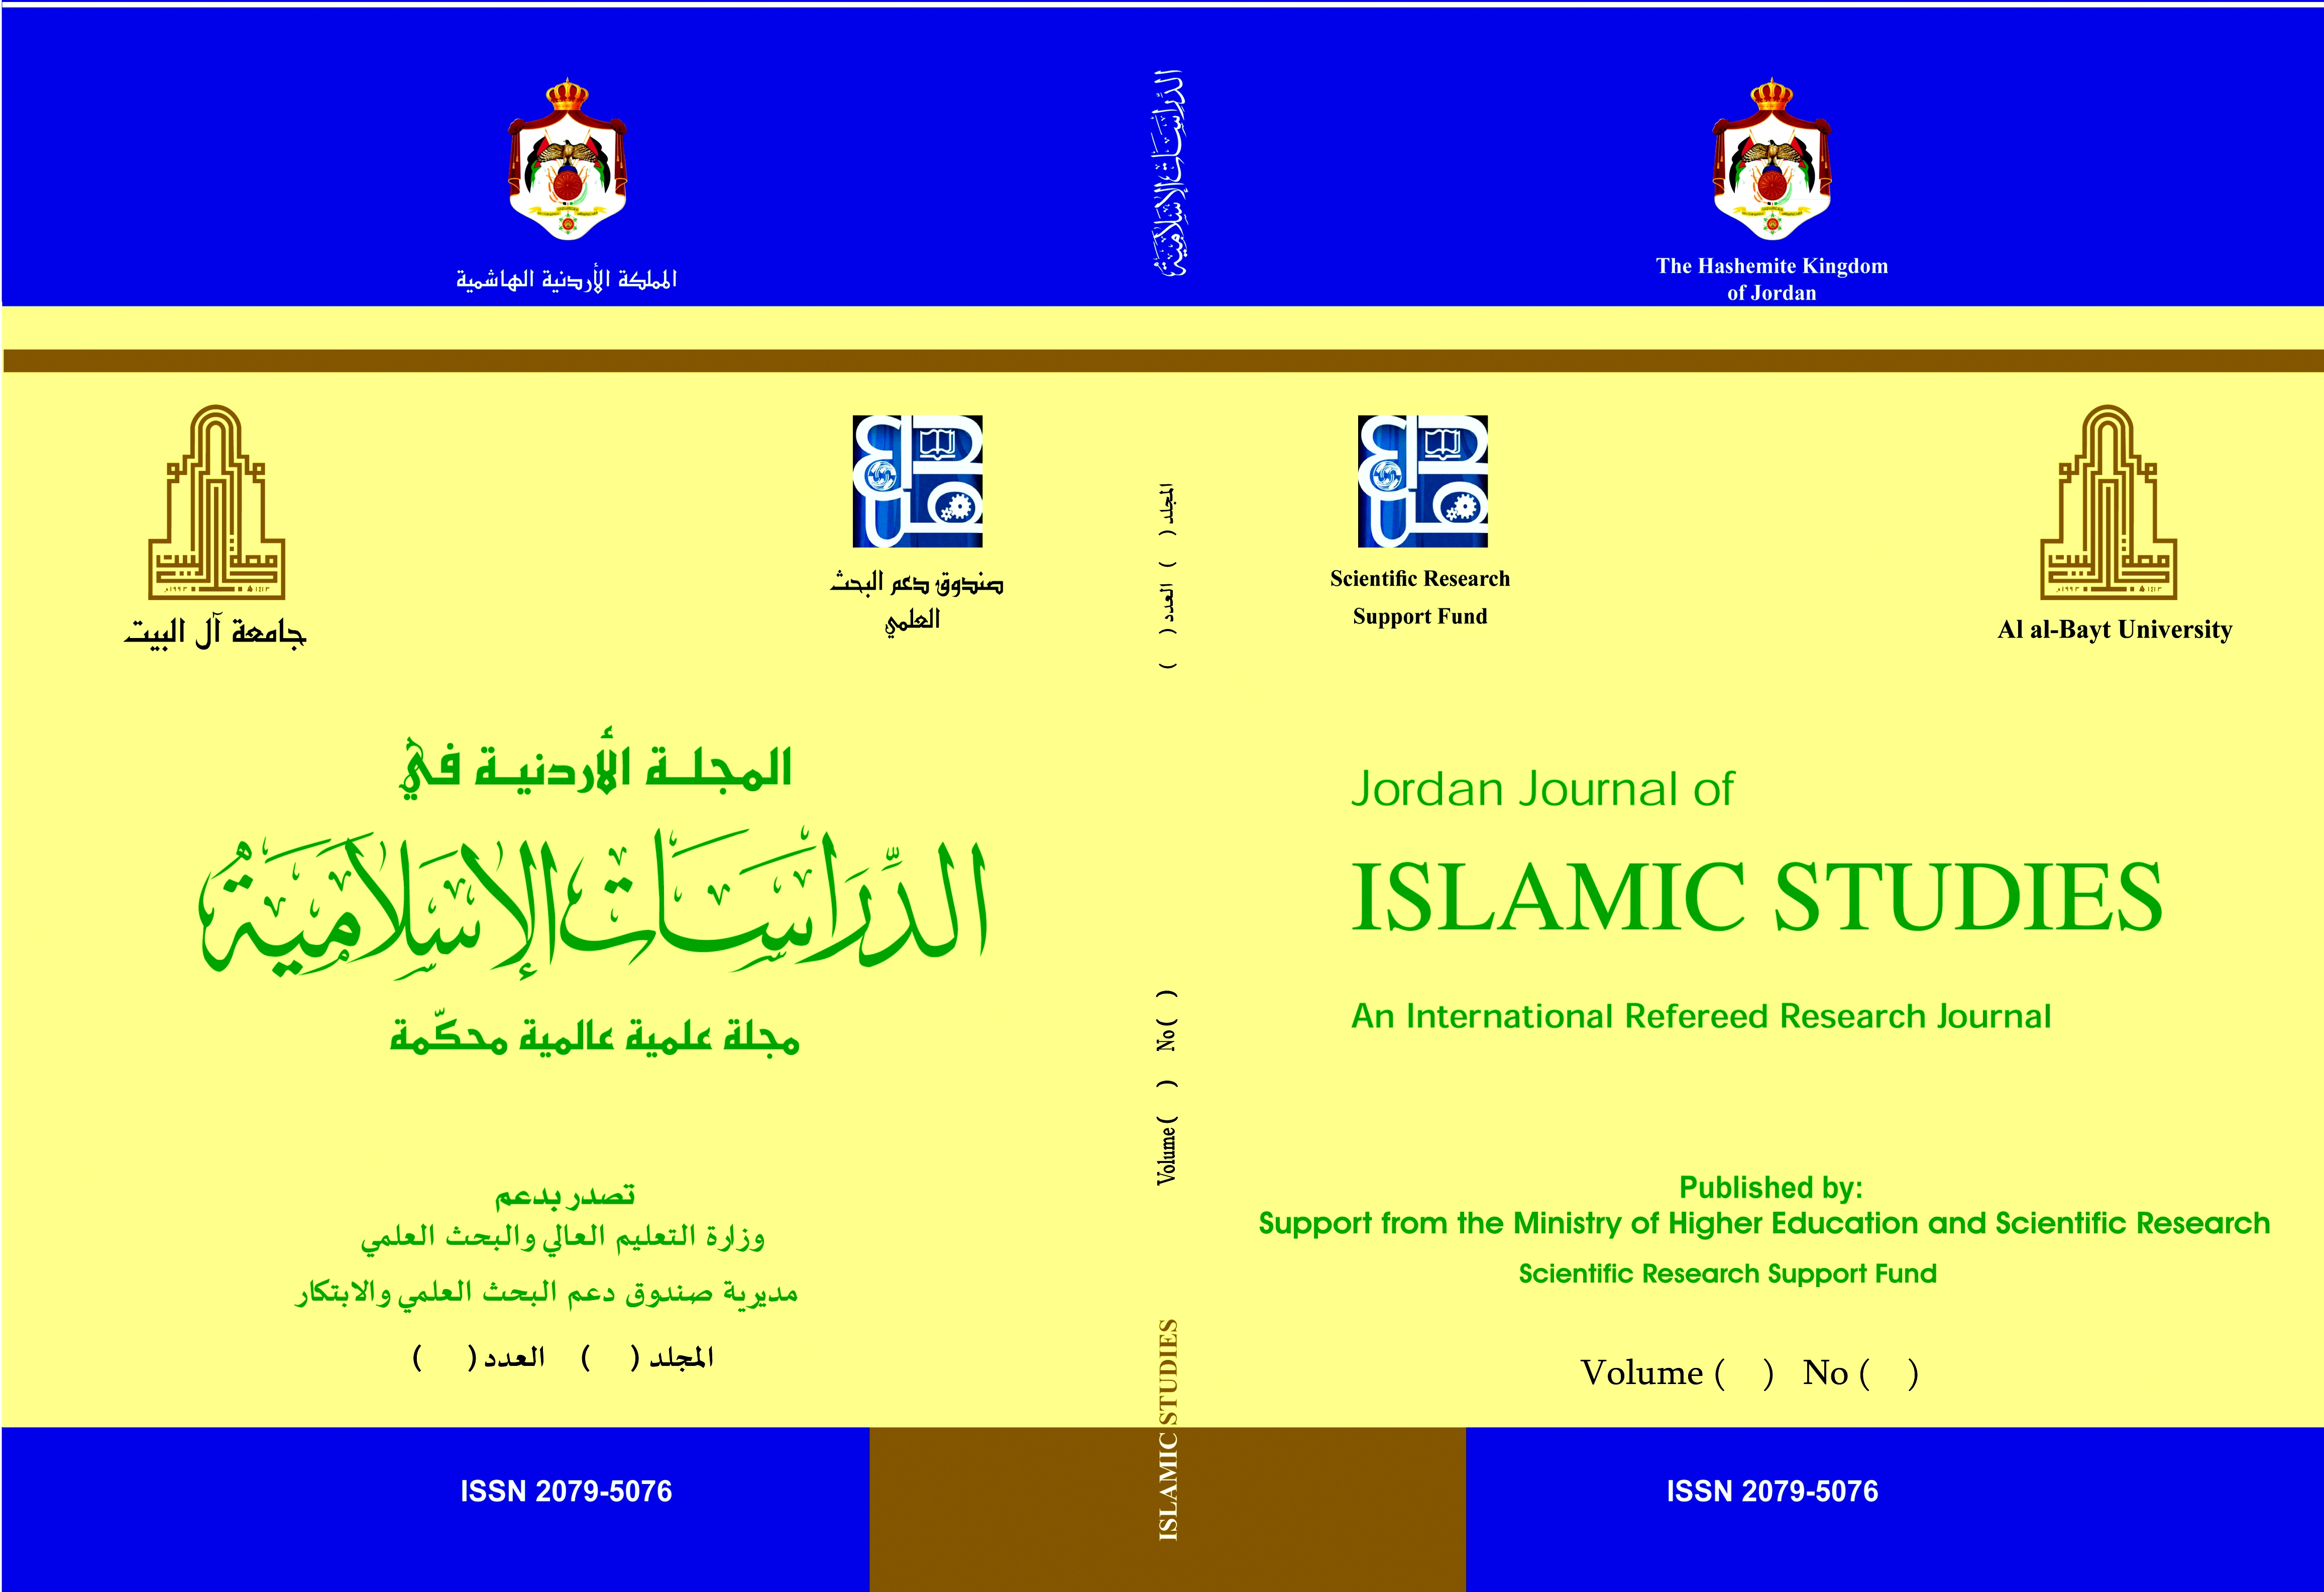 Jordan Journal of Islamic Studies